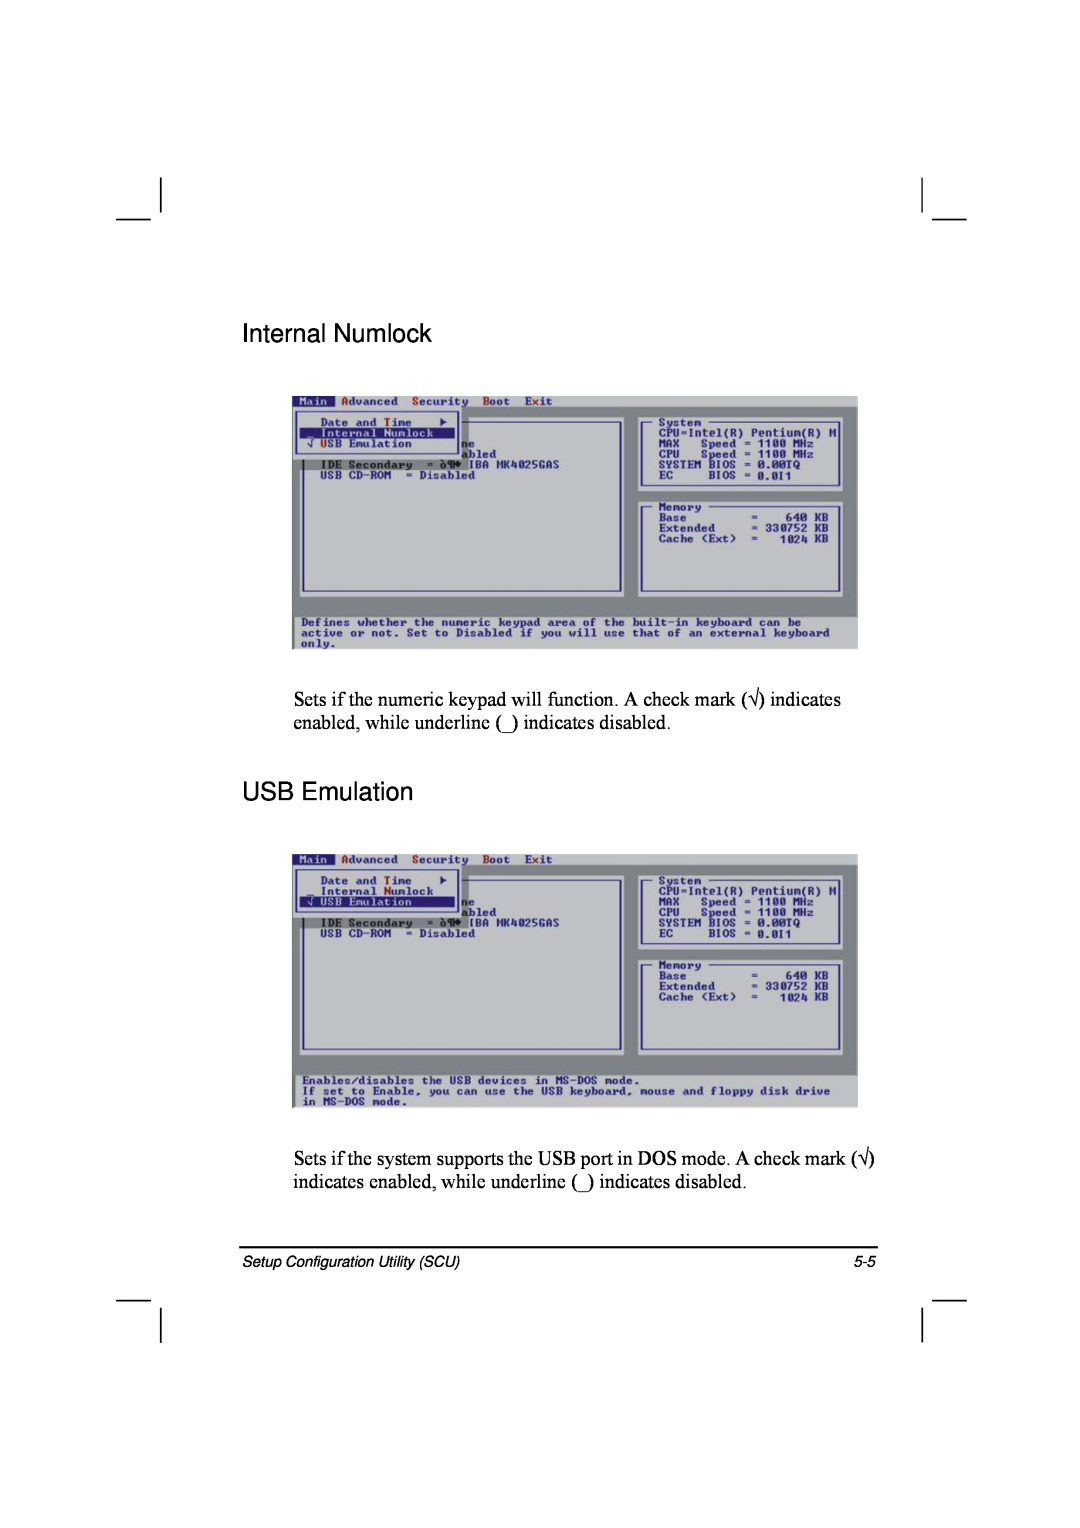 TAG 20 Series manual Internal Numlock, USB Emulation 